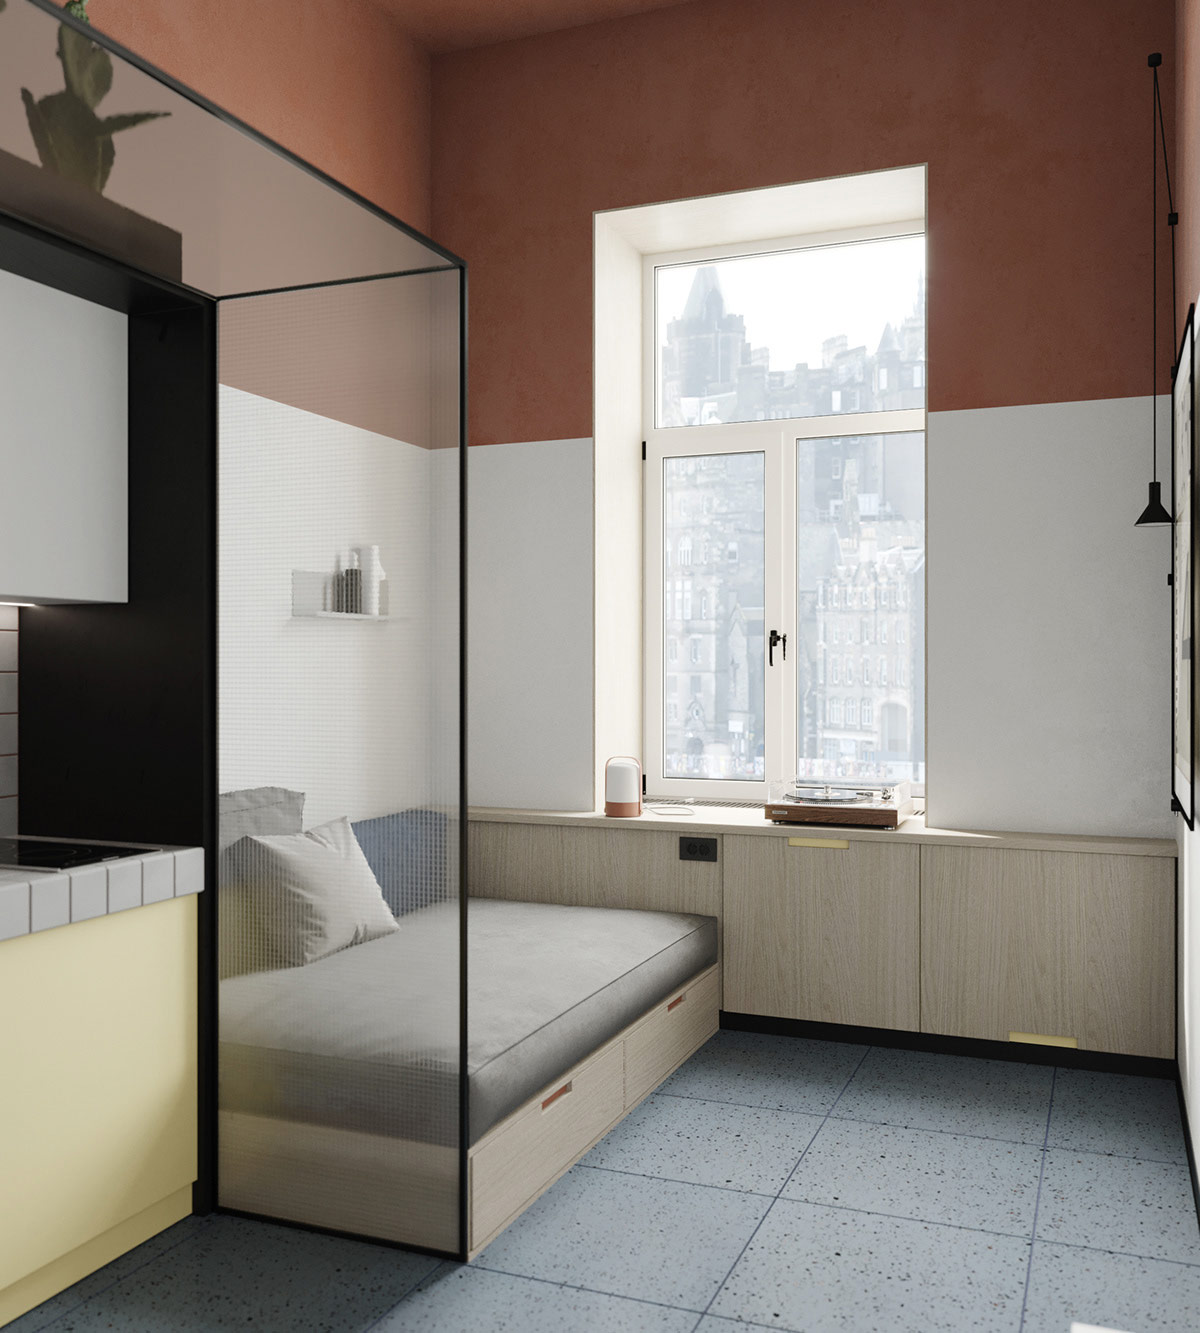 Hình ảnh góc căn hộ nhỏ với sofa giường có ngăn kéo, tủ lưu trữ bố trí xung quanh cửa sổ